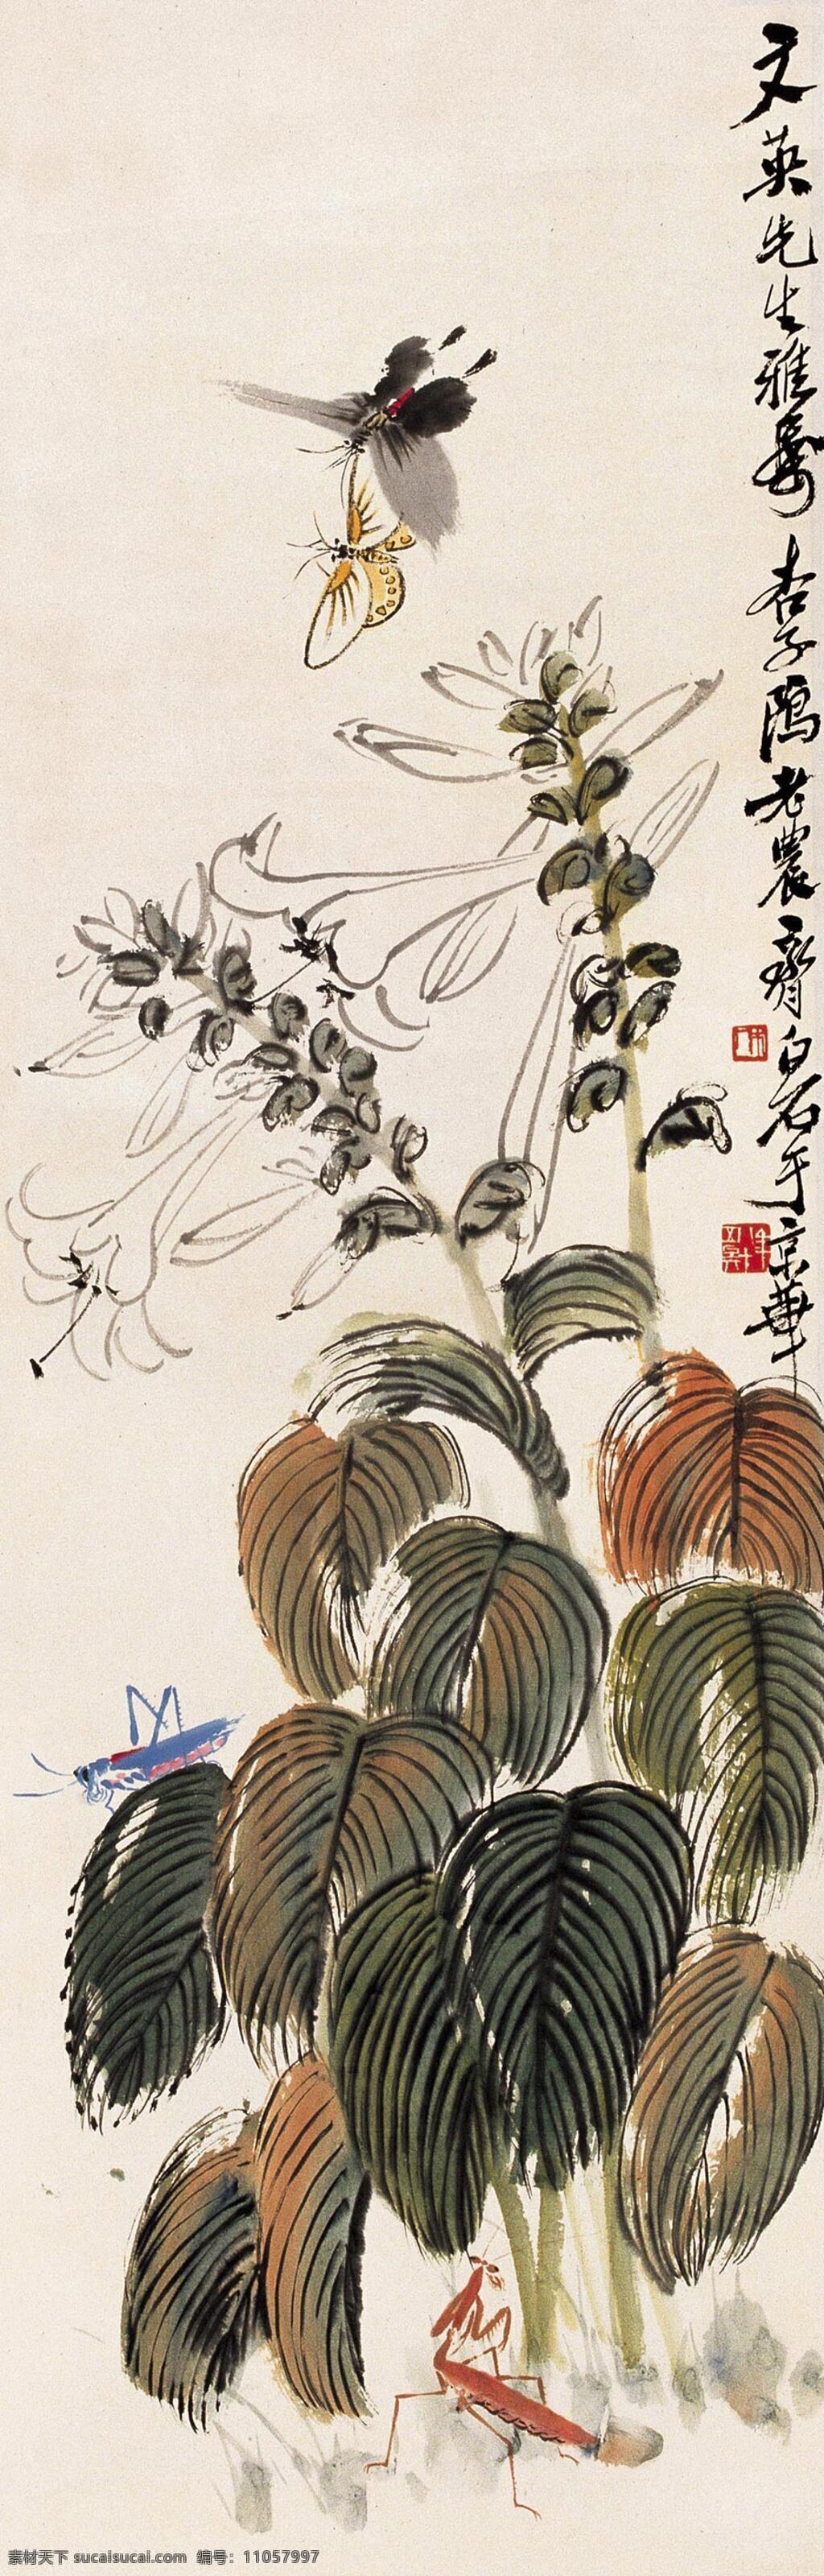 国画 植物 昆虫 中国画 水墨画 书画文字 文化艺术